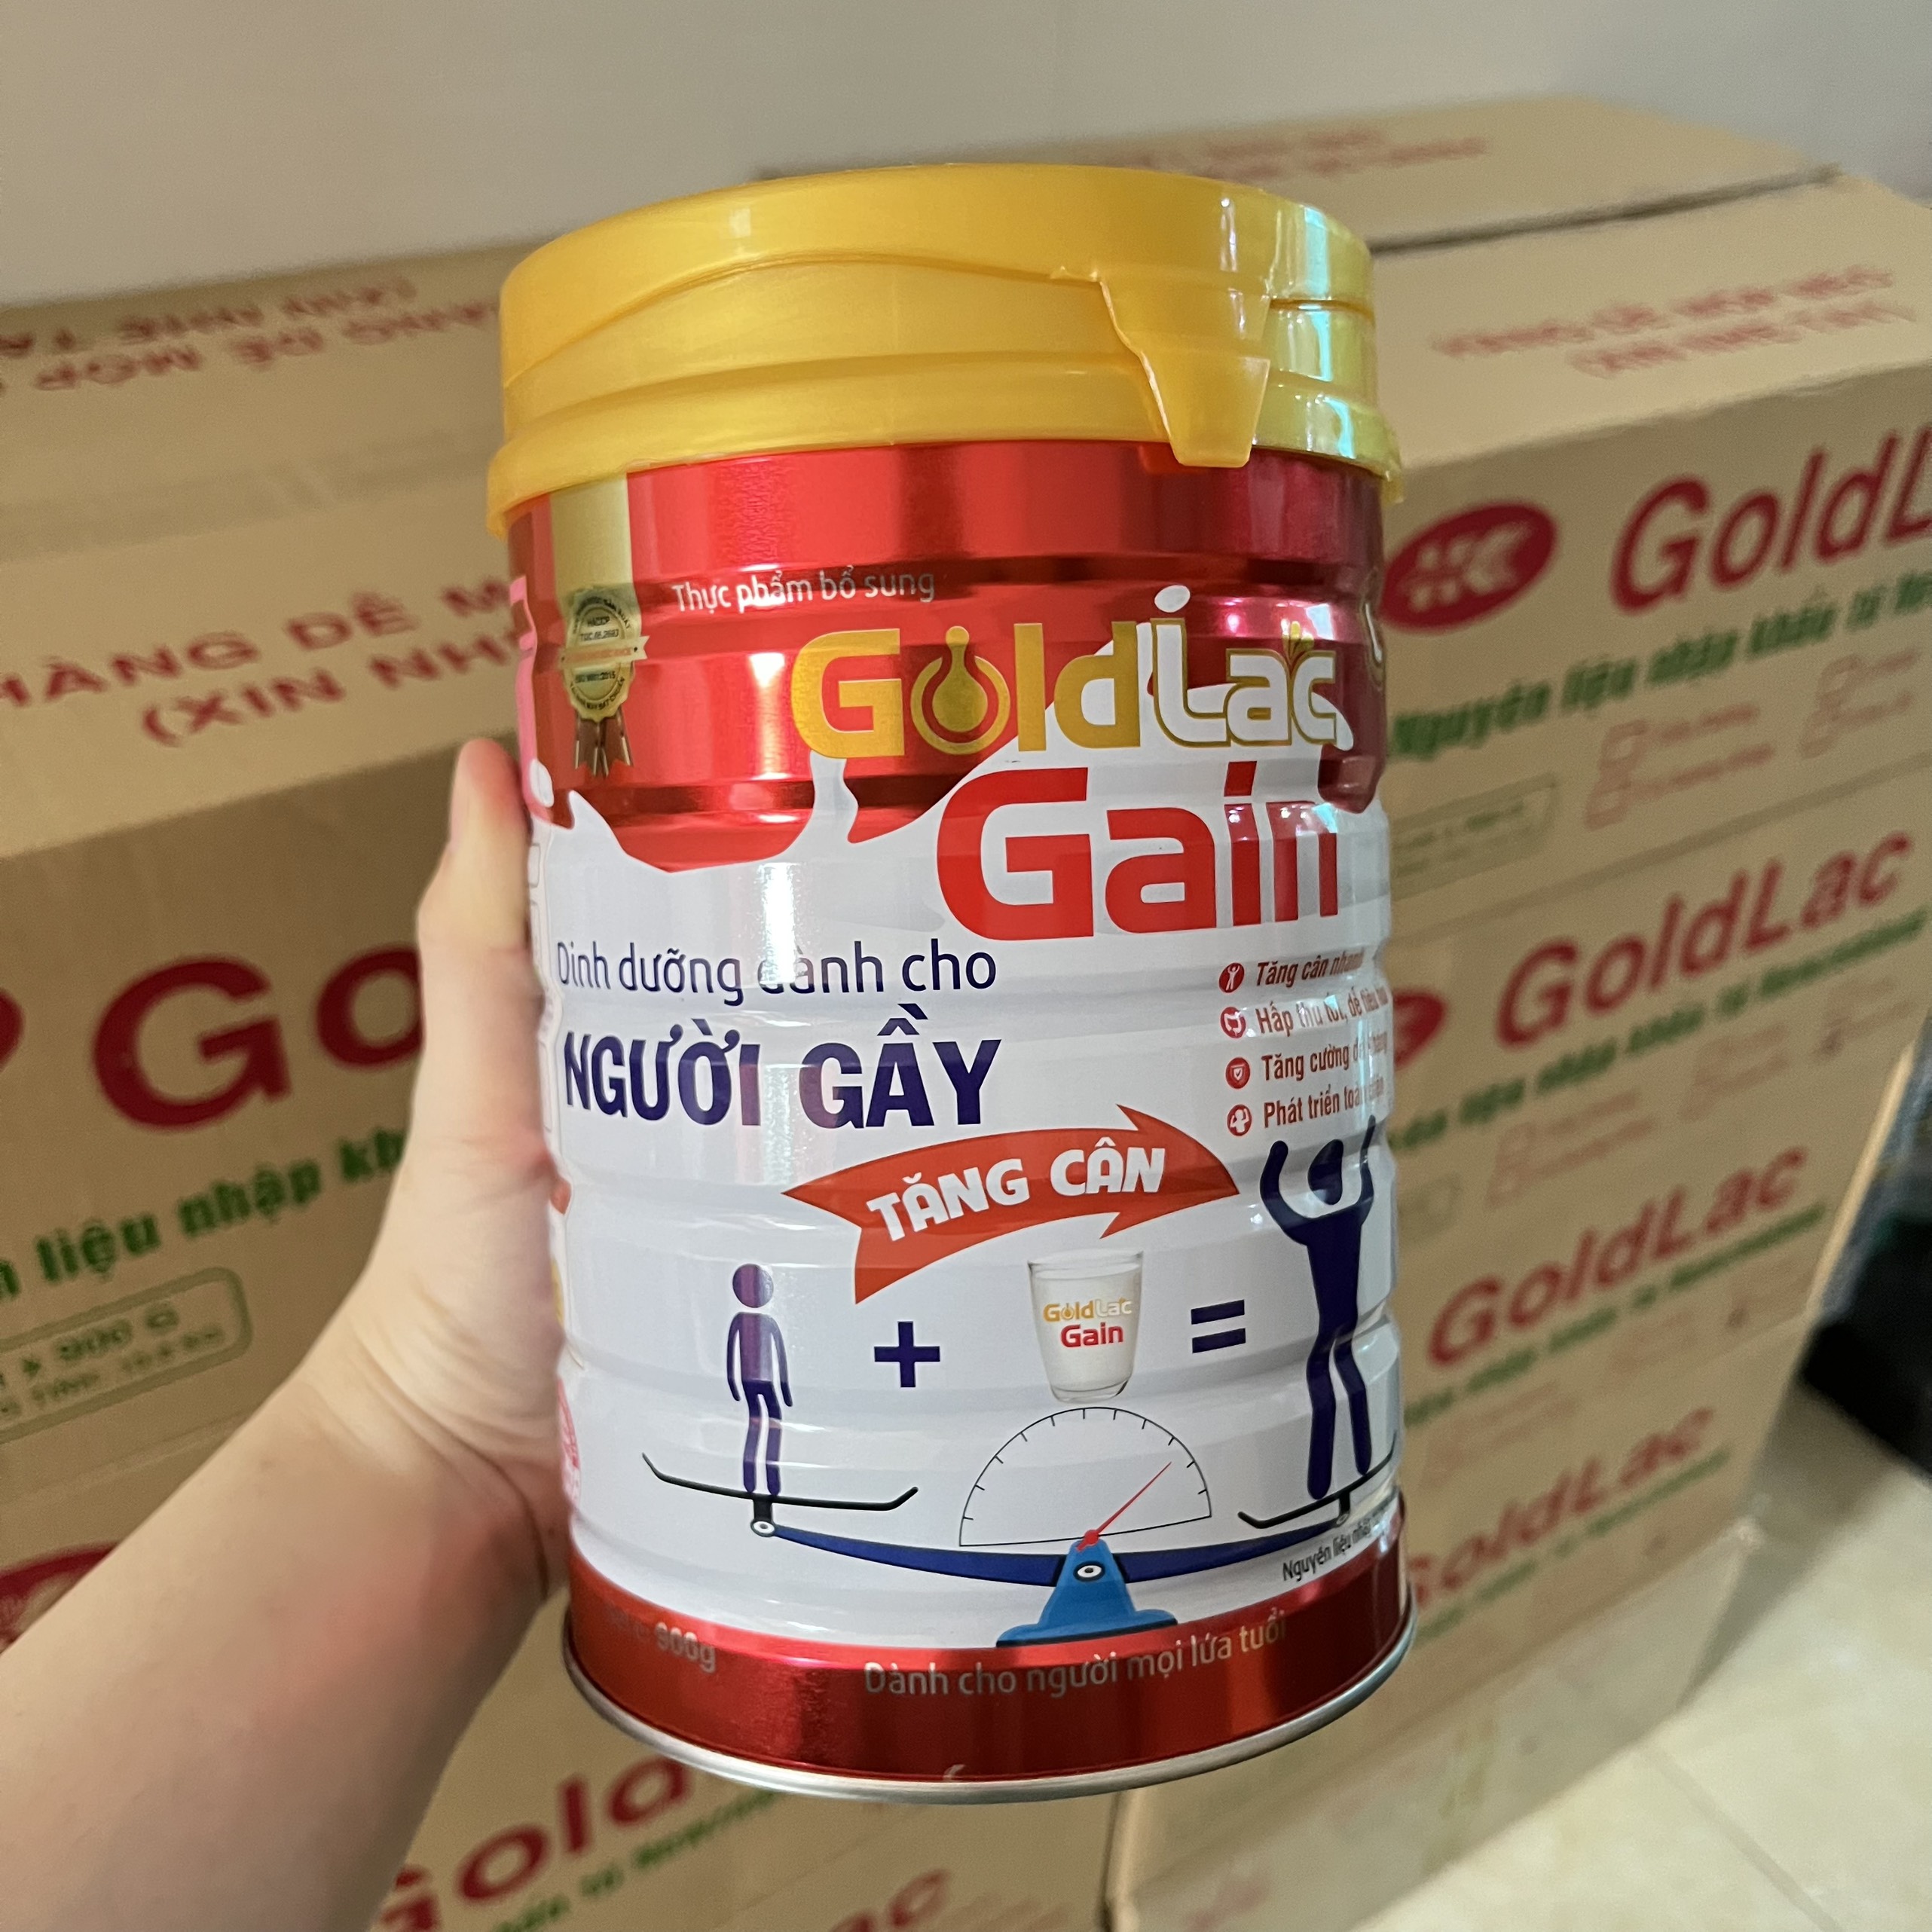 Sữa bột hỗ trợ tăng cân, cung cấp dinh dưỡng cho người gầy Goldlac Gain